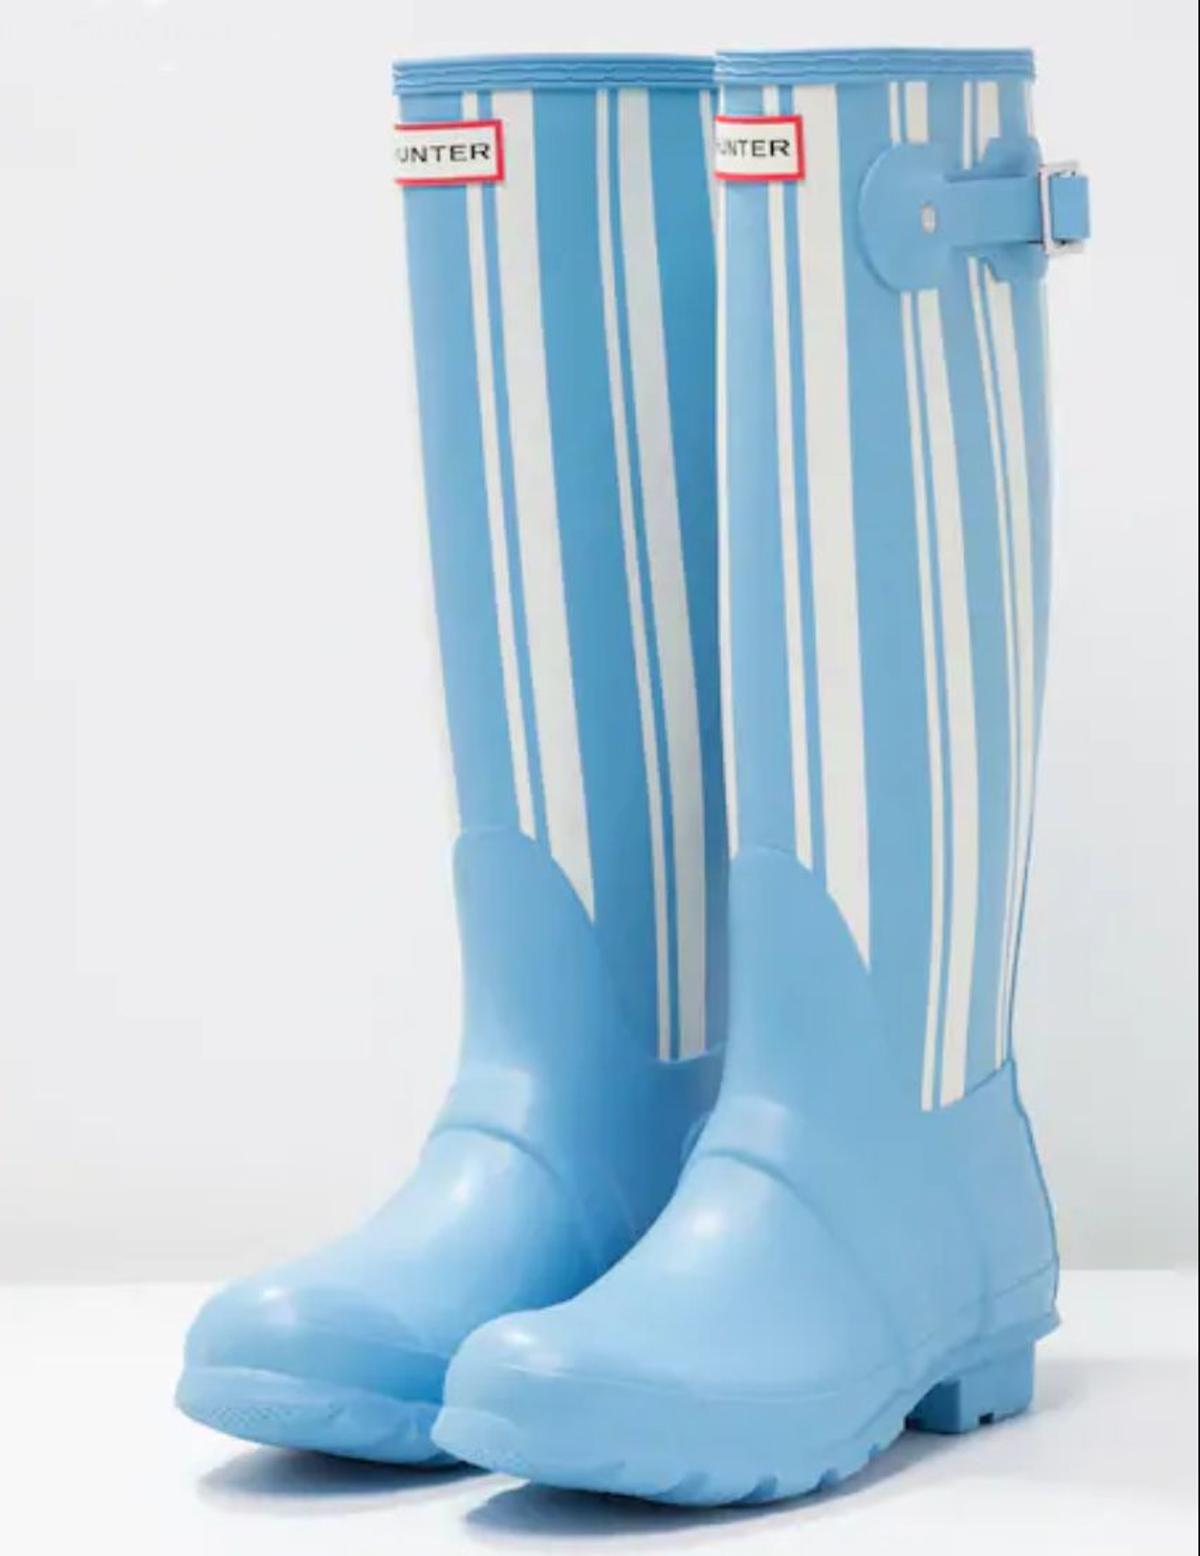 Botas de agua en azul y blanco, de Hunter (Precio: 99,95 euros)